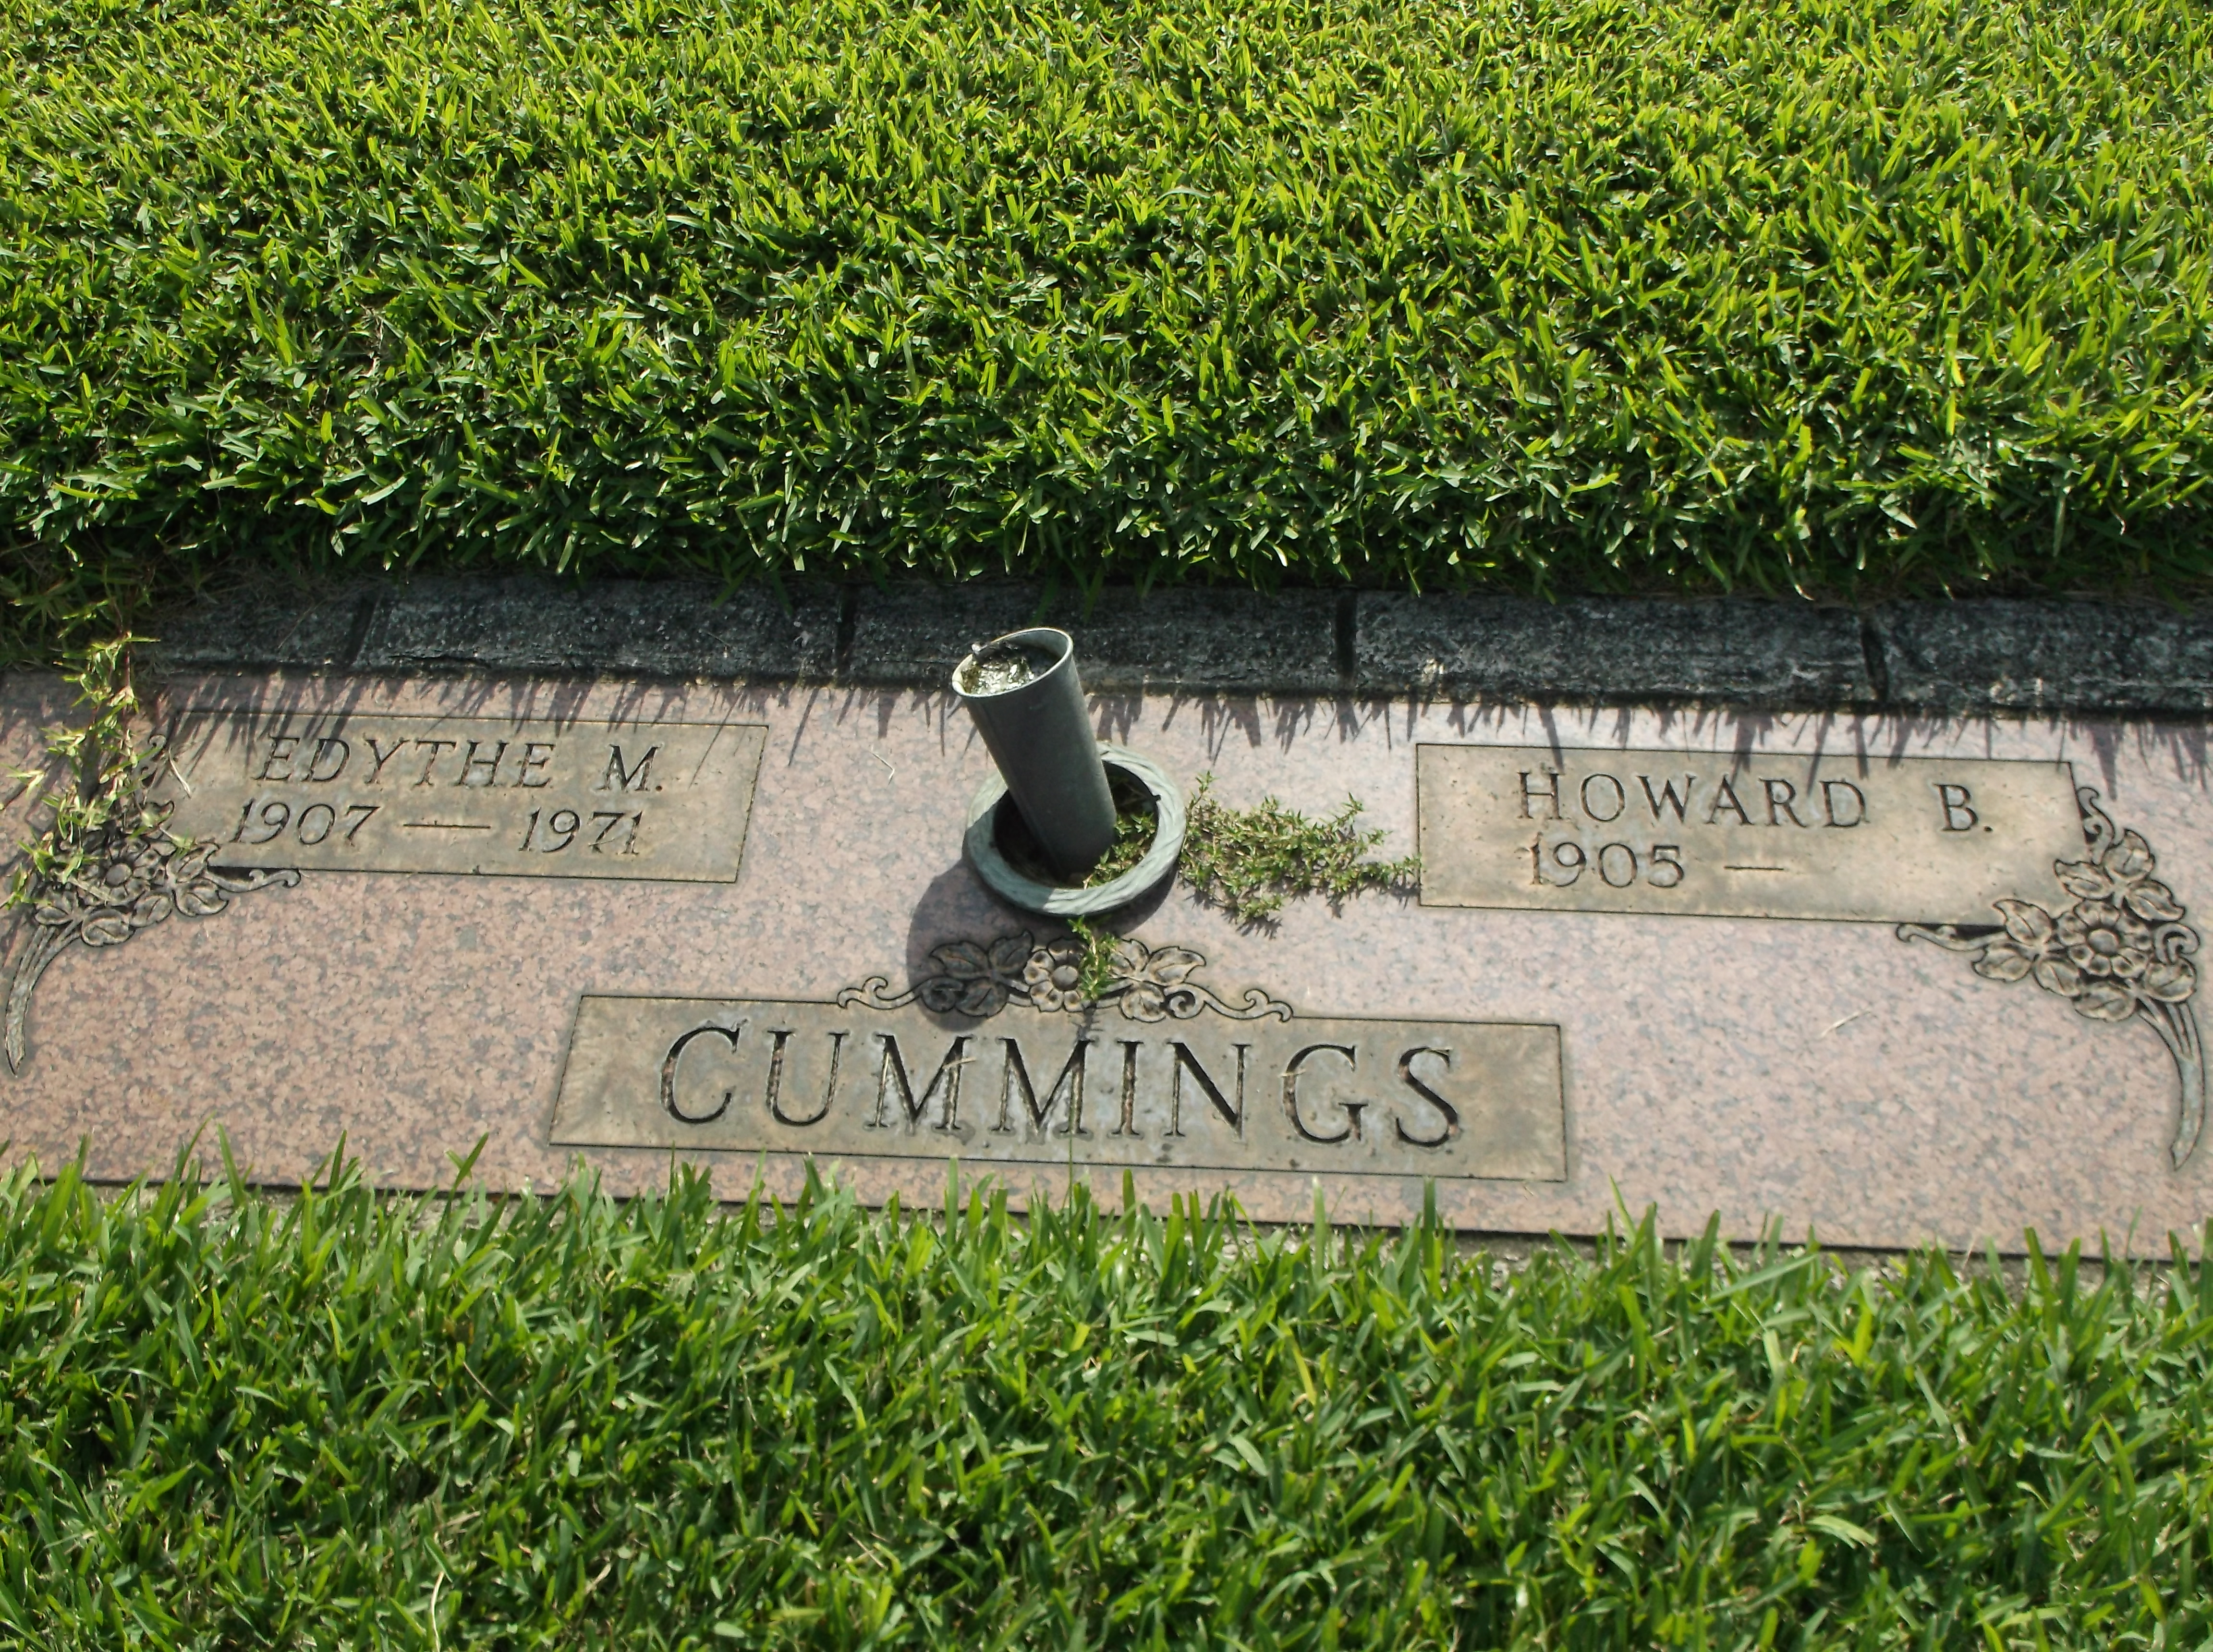 Howard B Cummings